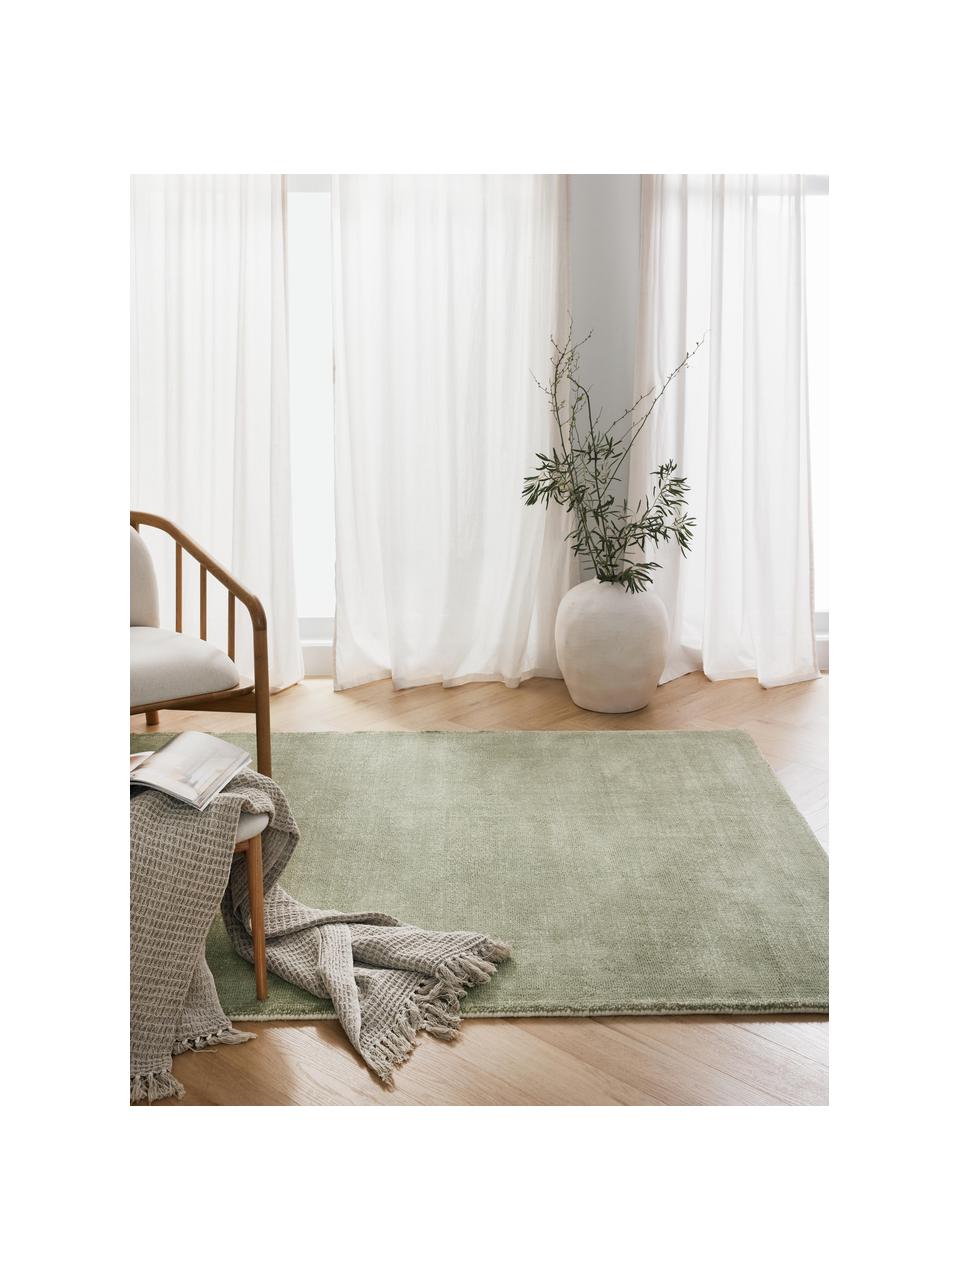 Ręcznie tkany dywan z krótkim włosiem Ainsley, 60% poliester z certyfikatem GRS
40% wełna, Jasny zielony, S 160 x D 230 cm (Rozmiar M)